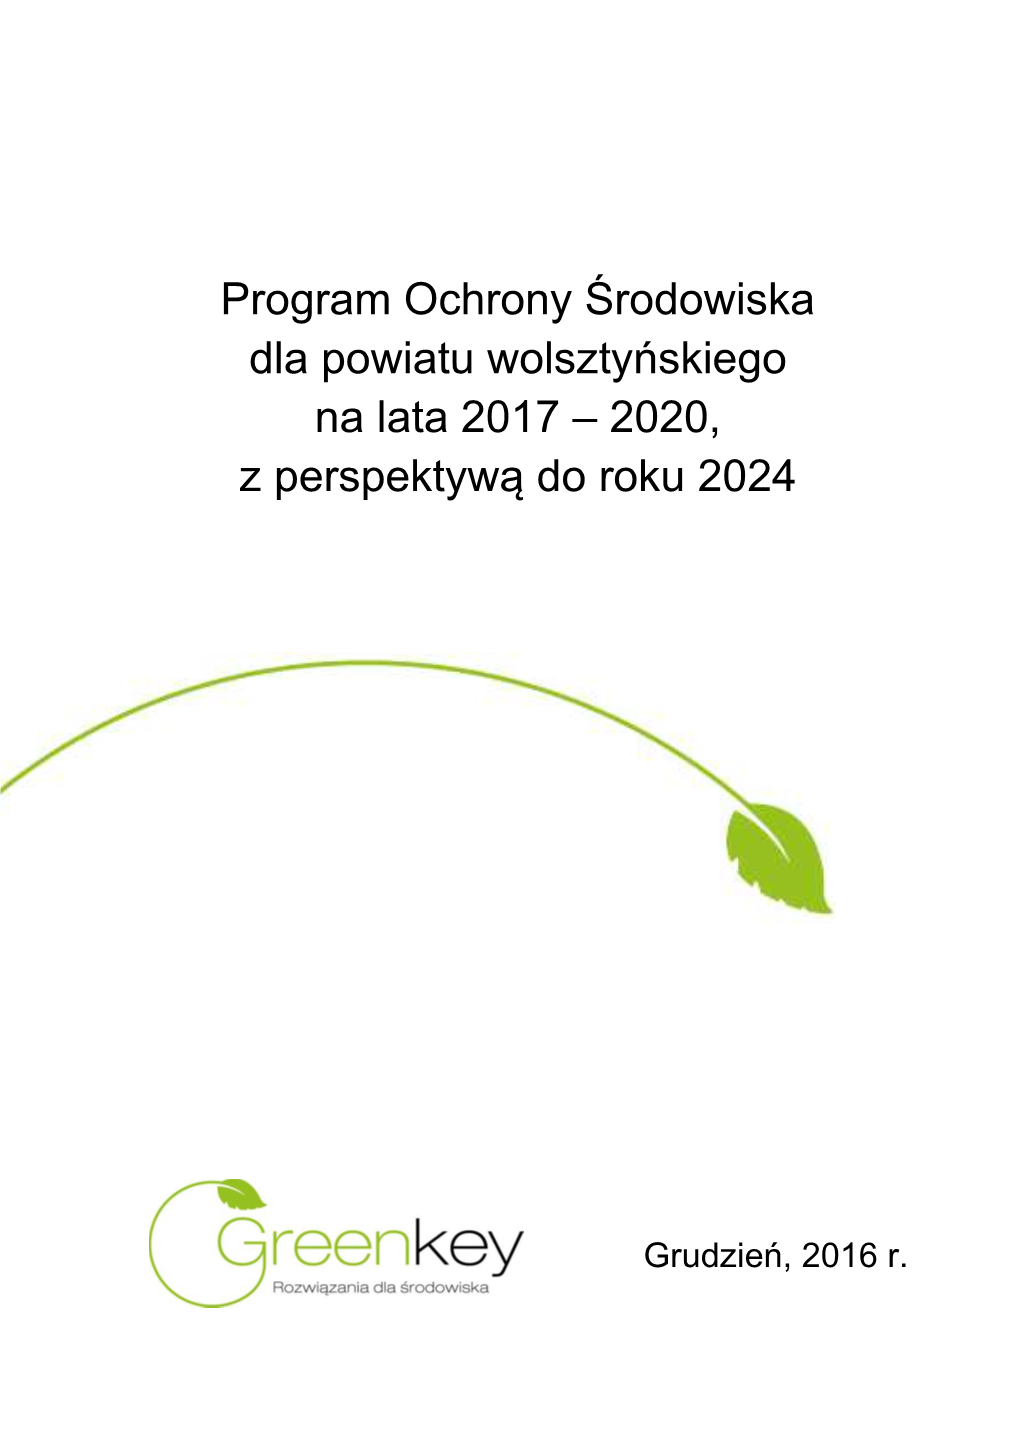 Program Ochrony Środowiska Dla Powiatu Wolsztyńskiego Na Lata 2017